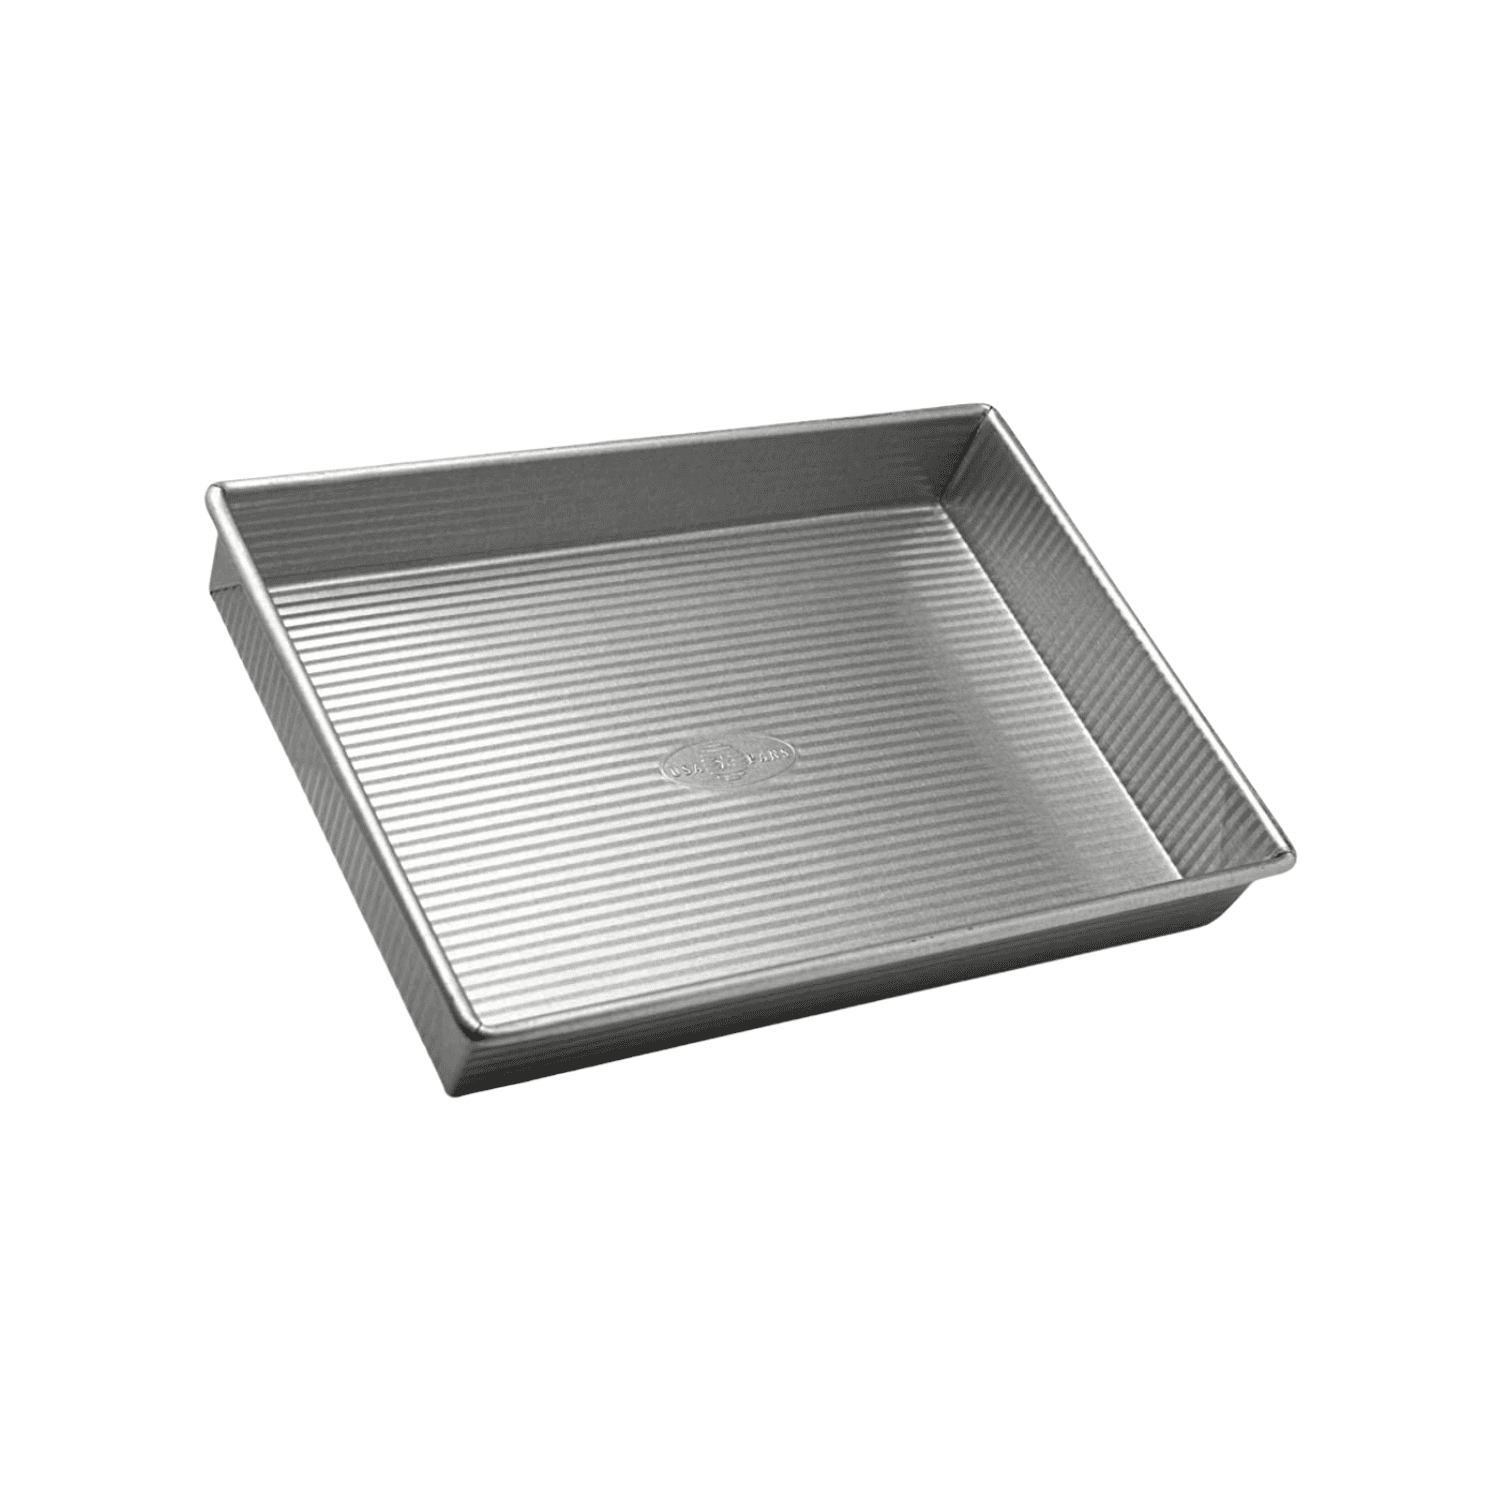 9x13 inch Baking Pan